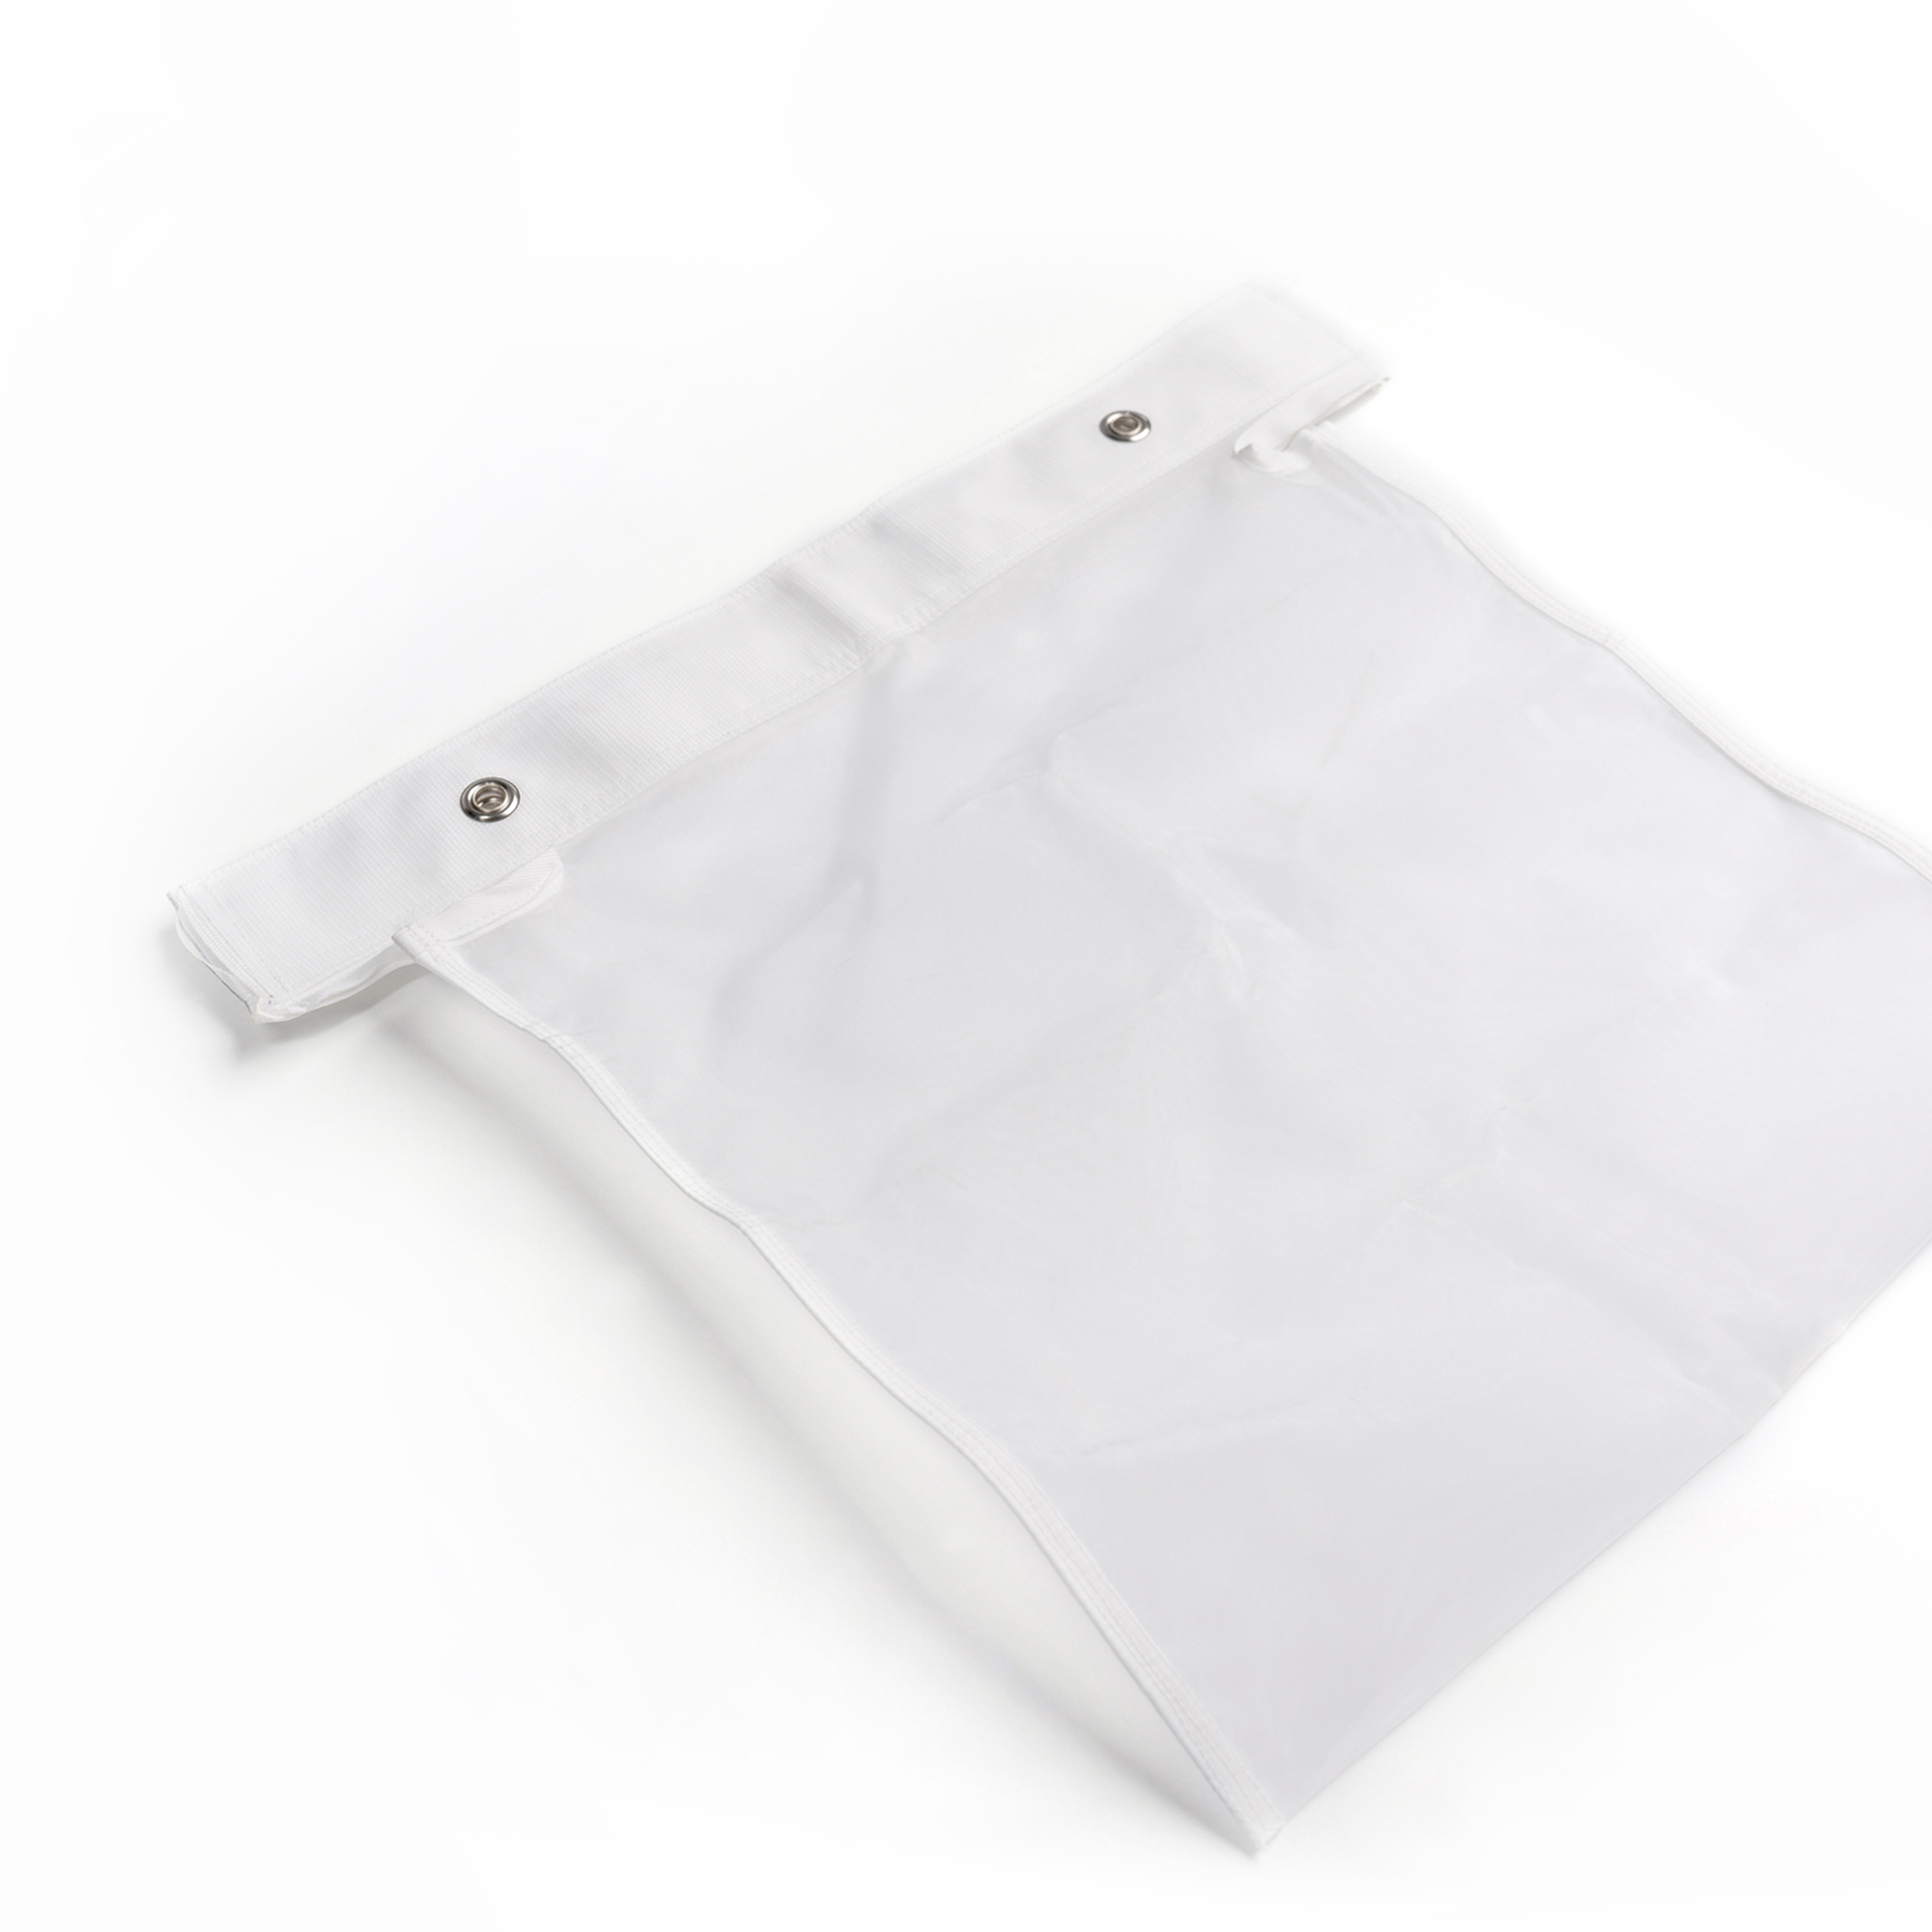 X-1 Press Bag- Monofilament "Nut Milk Bag"